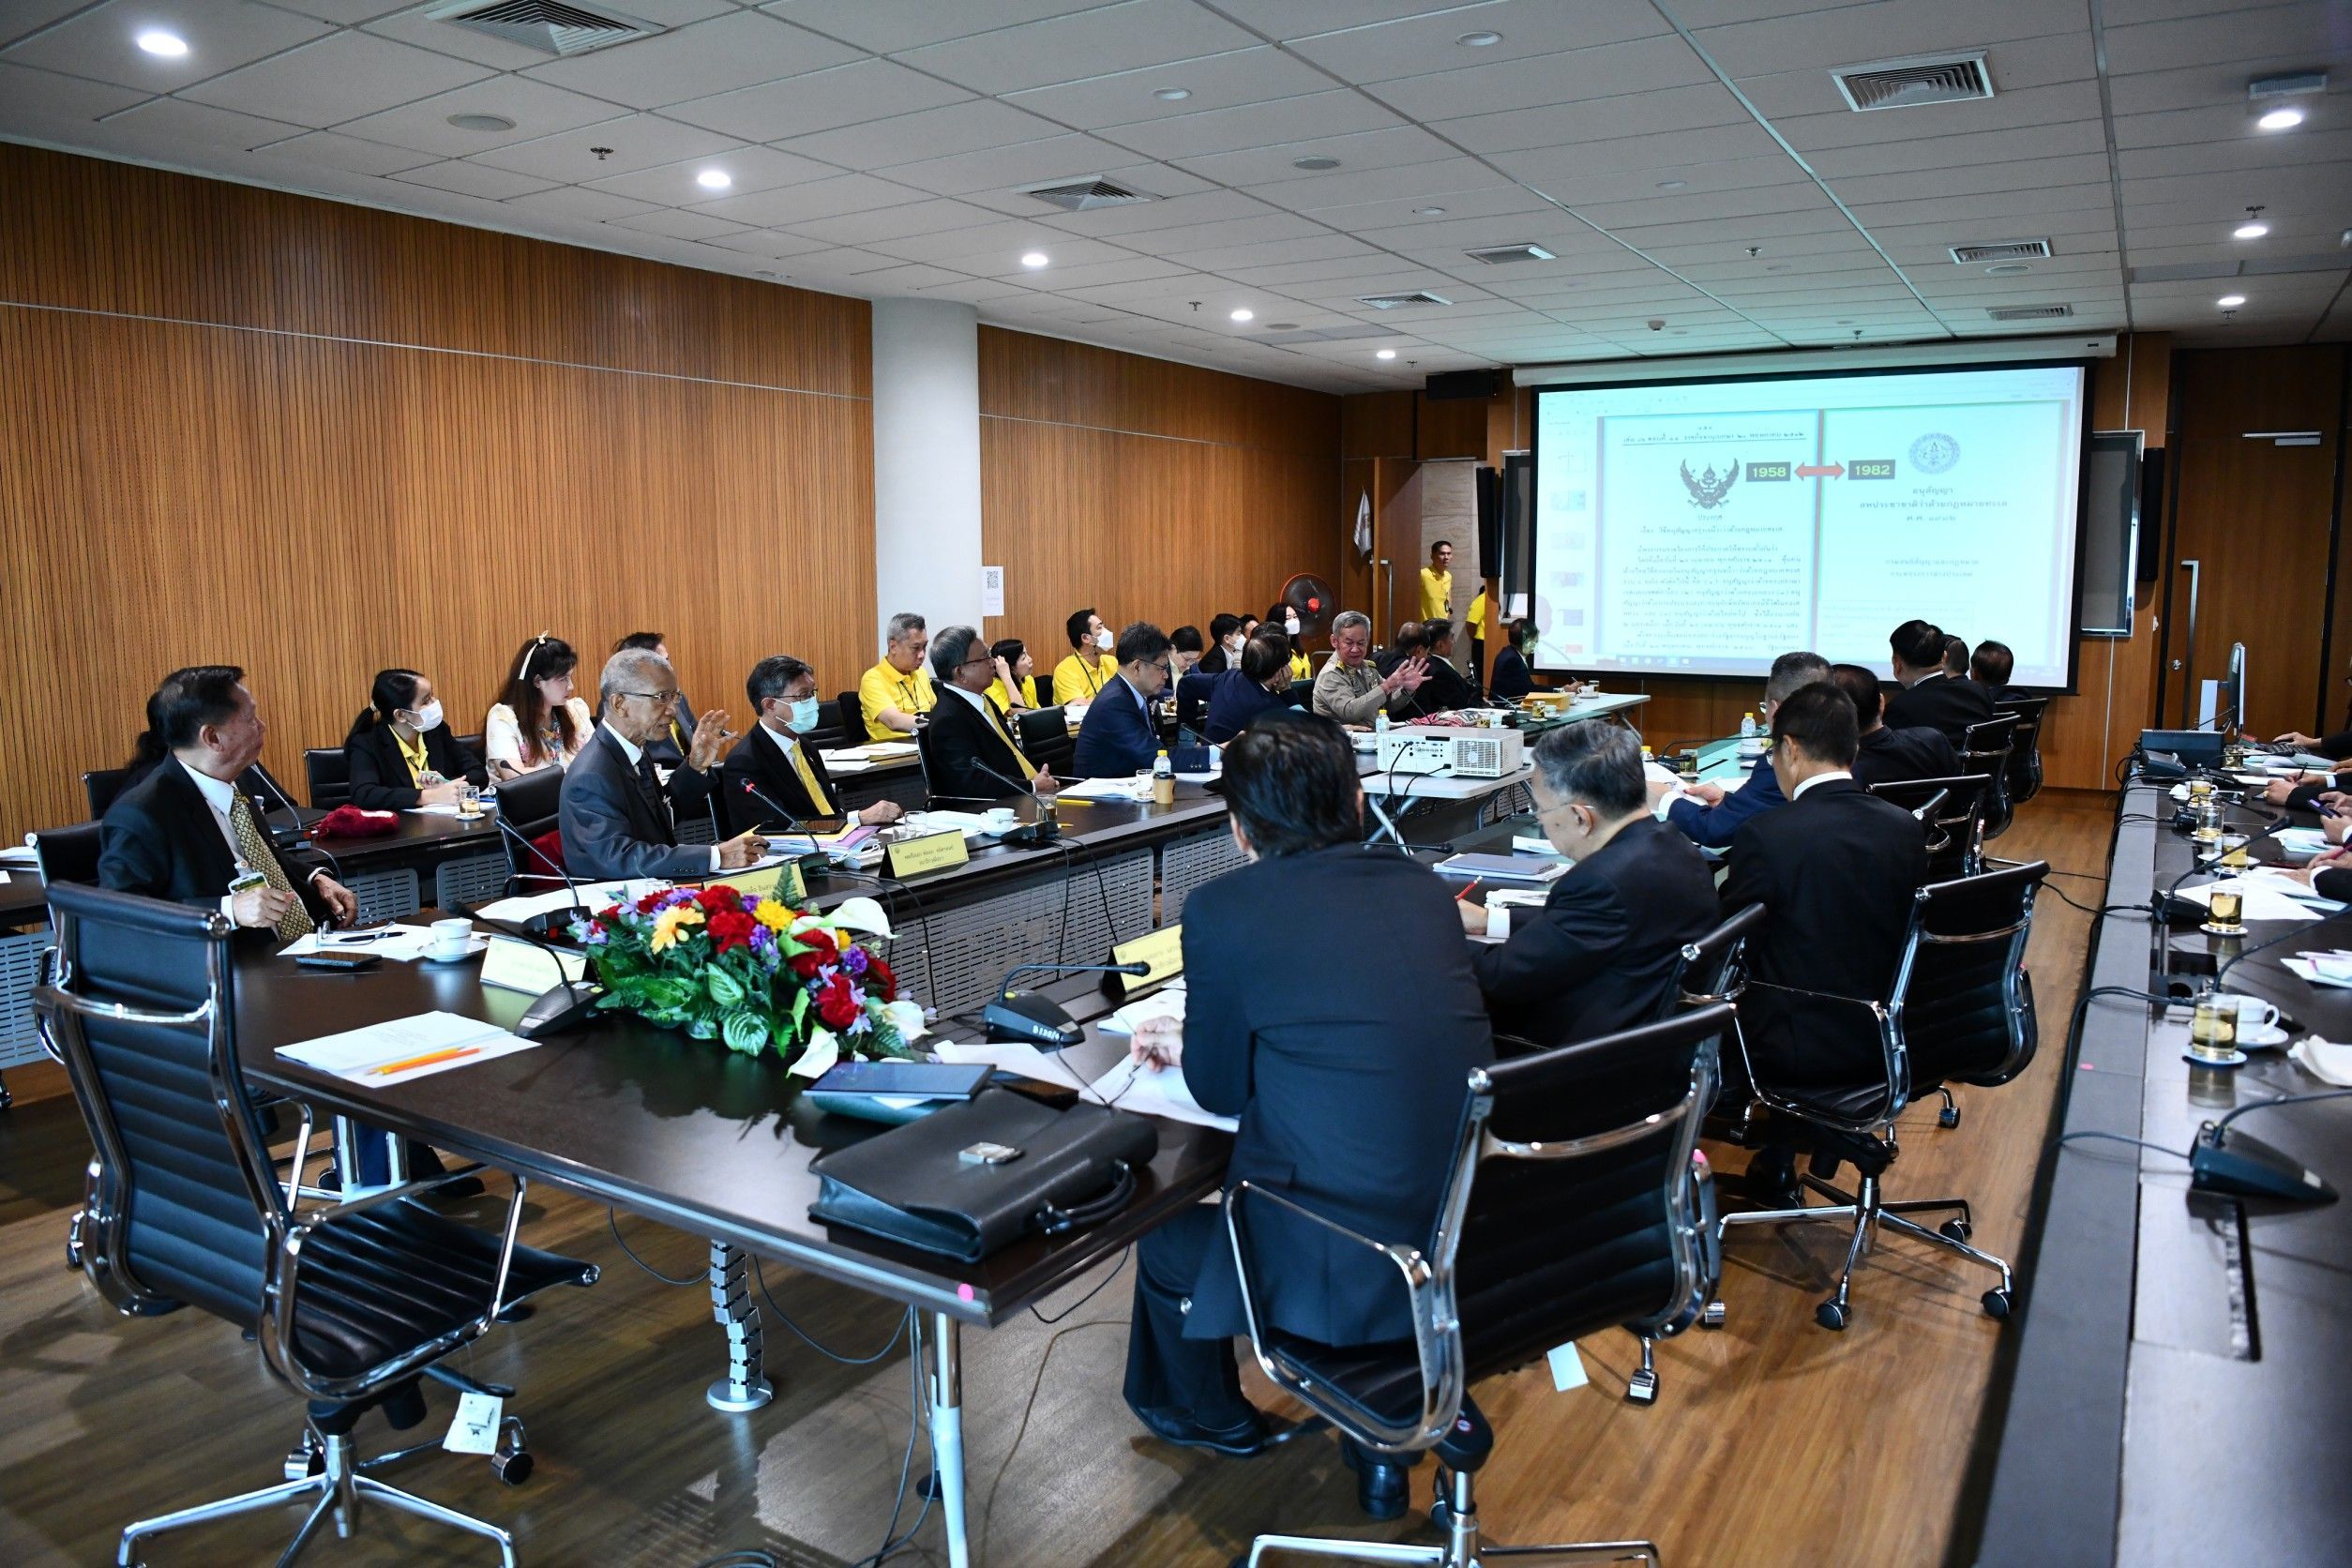 คณะกรรมการวิชาการของวุฒิสภา จัดกิจกรรม Morning Talk เรื่อง “ปัญหาพื้นที่ทับซ้อนทางทะเลไทย - กัมพูชา”